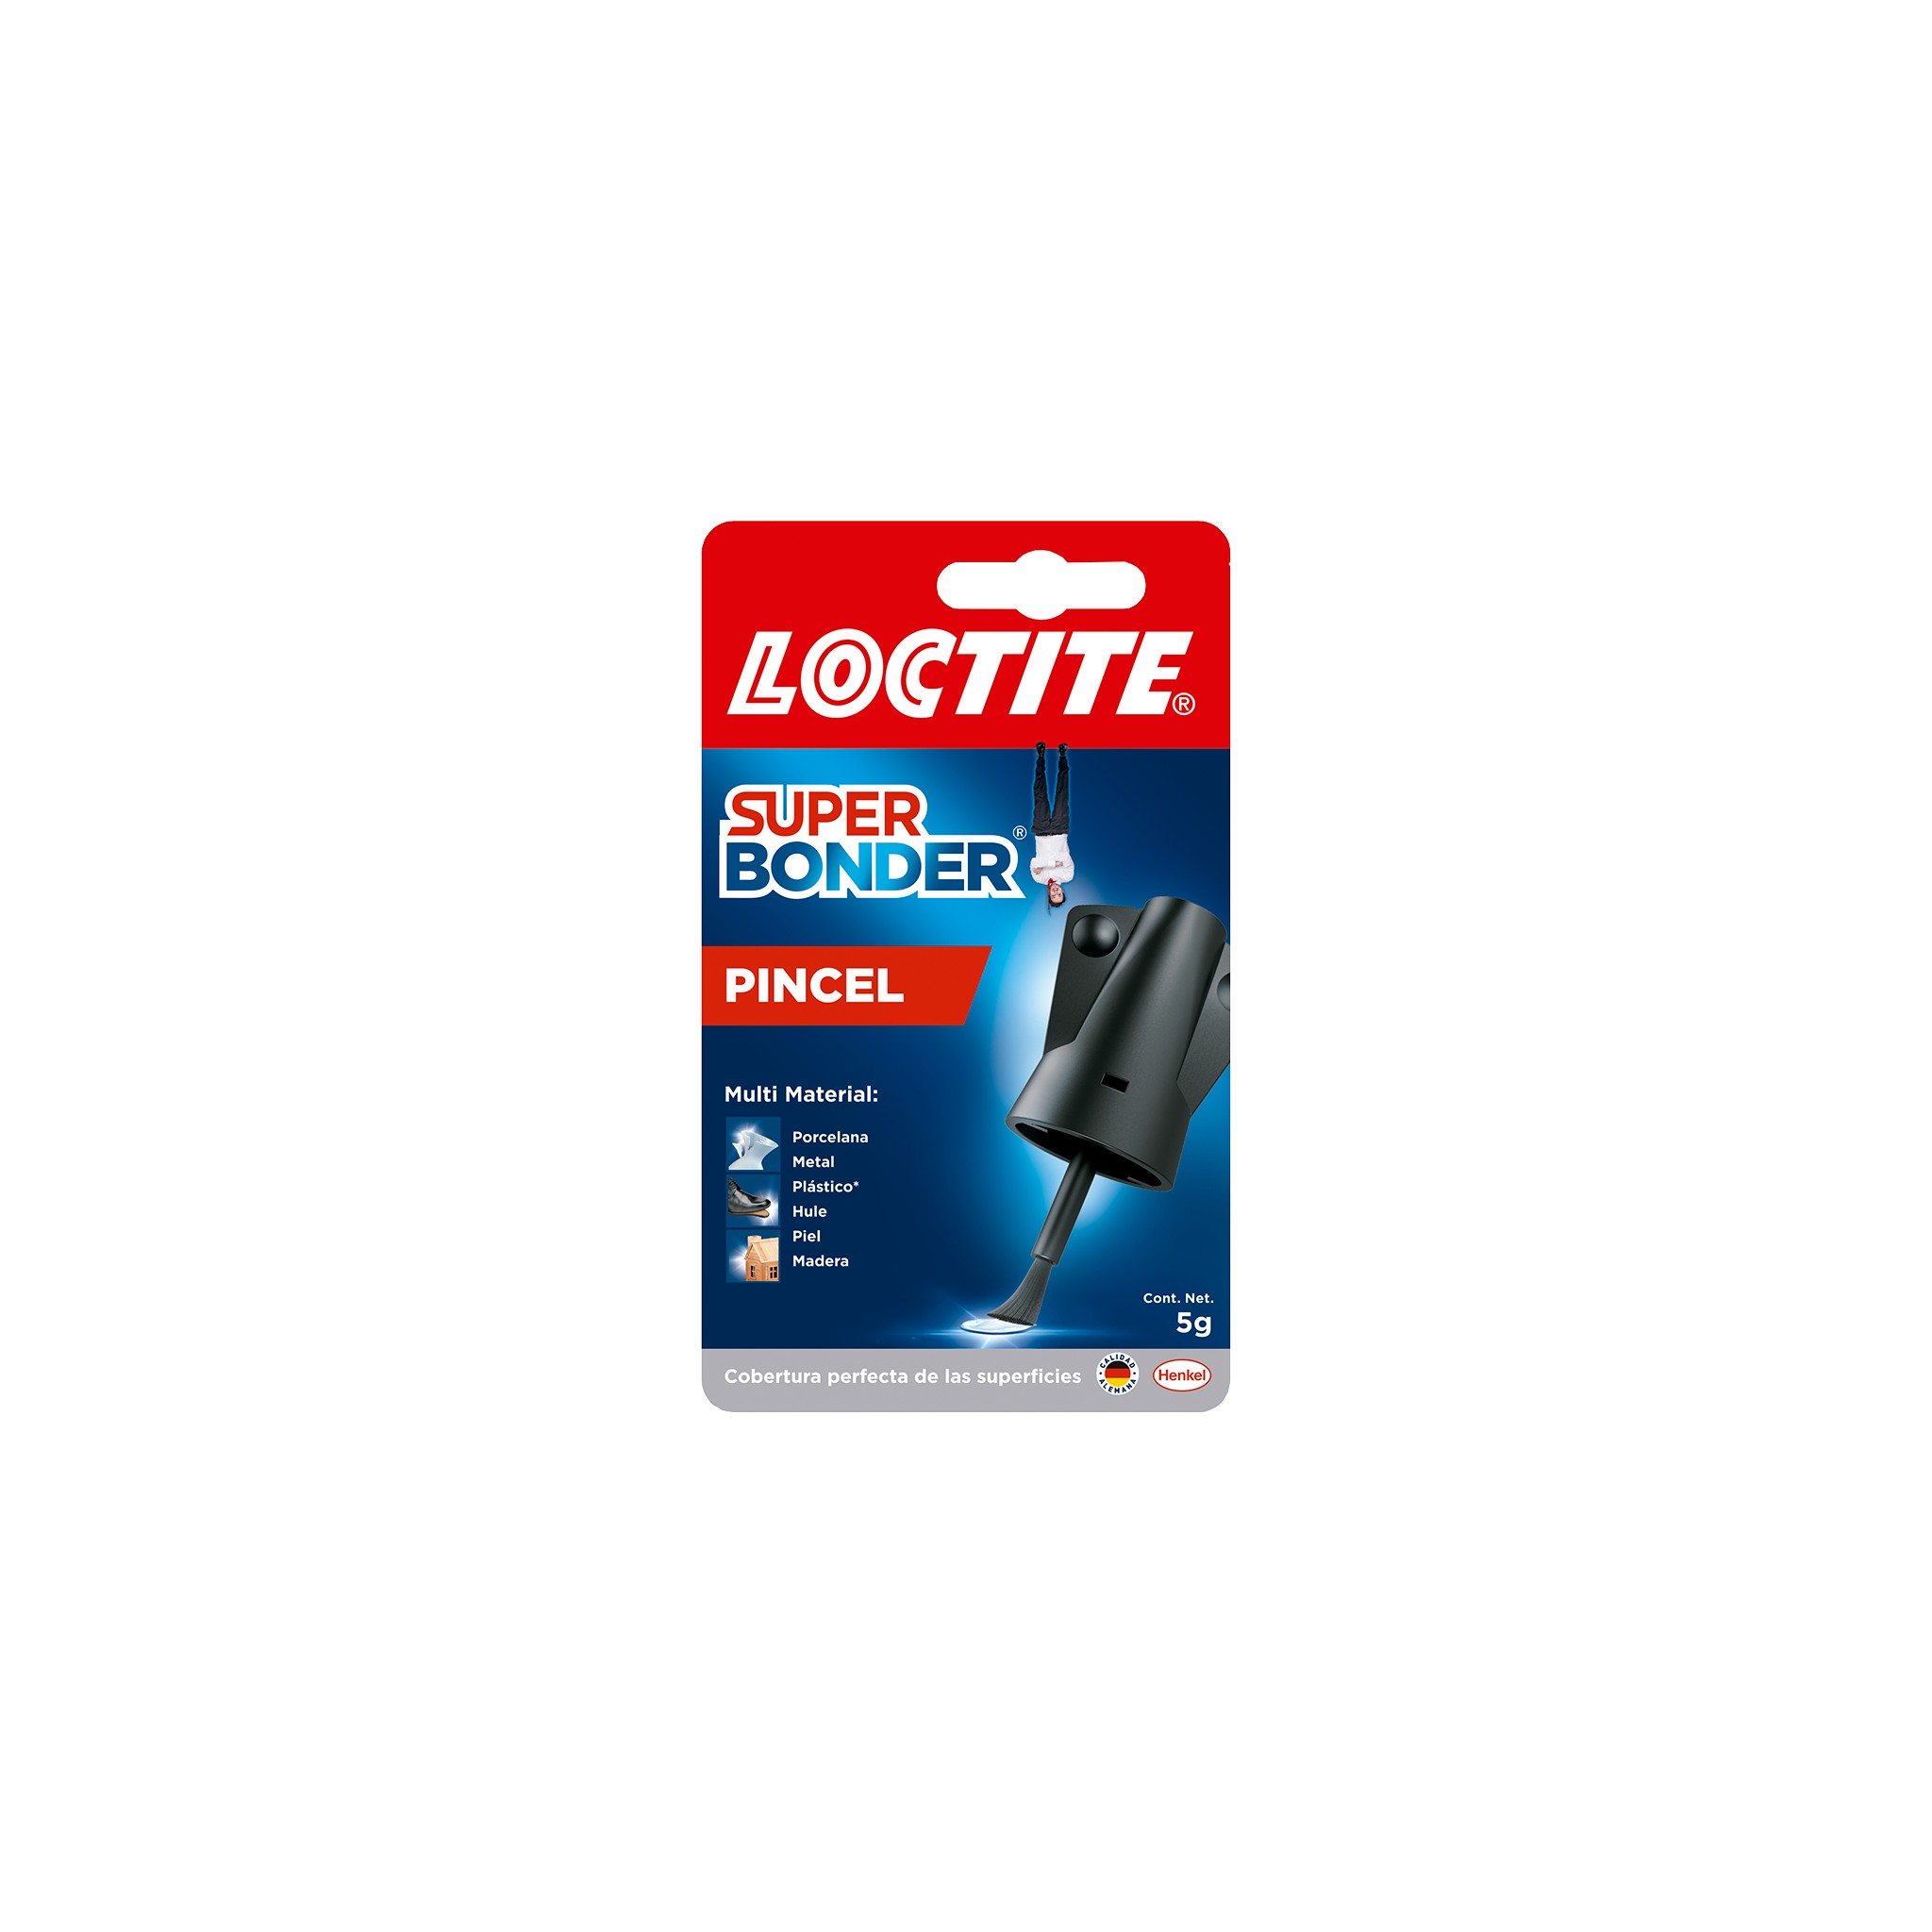 Loctite - Sigue usando tus zapatos favoritos, solo repara con Loctite Super  Bonder Pincel fácil y rápido. 👠😁 #YoMeQuedoEnCasa #LANmakeithappen # Loctite #Pincel